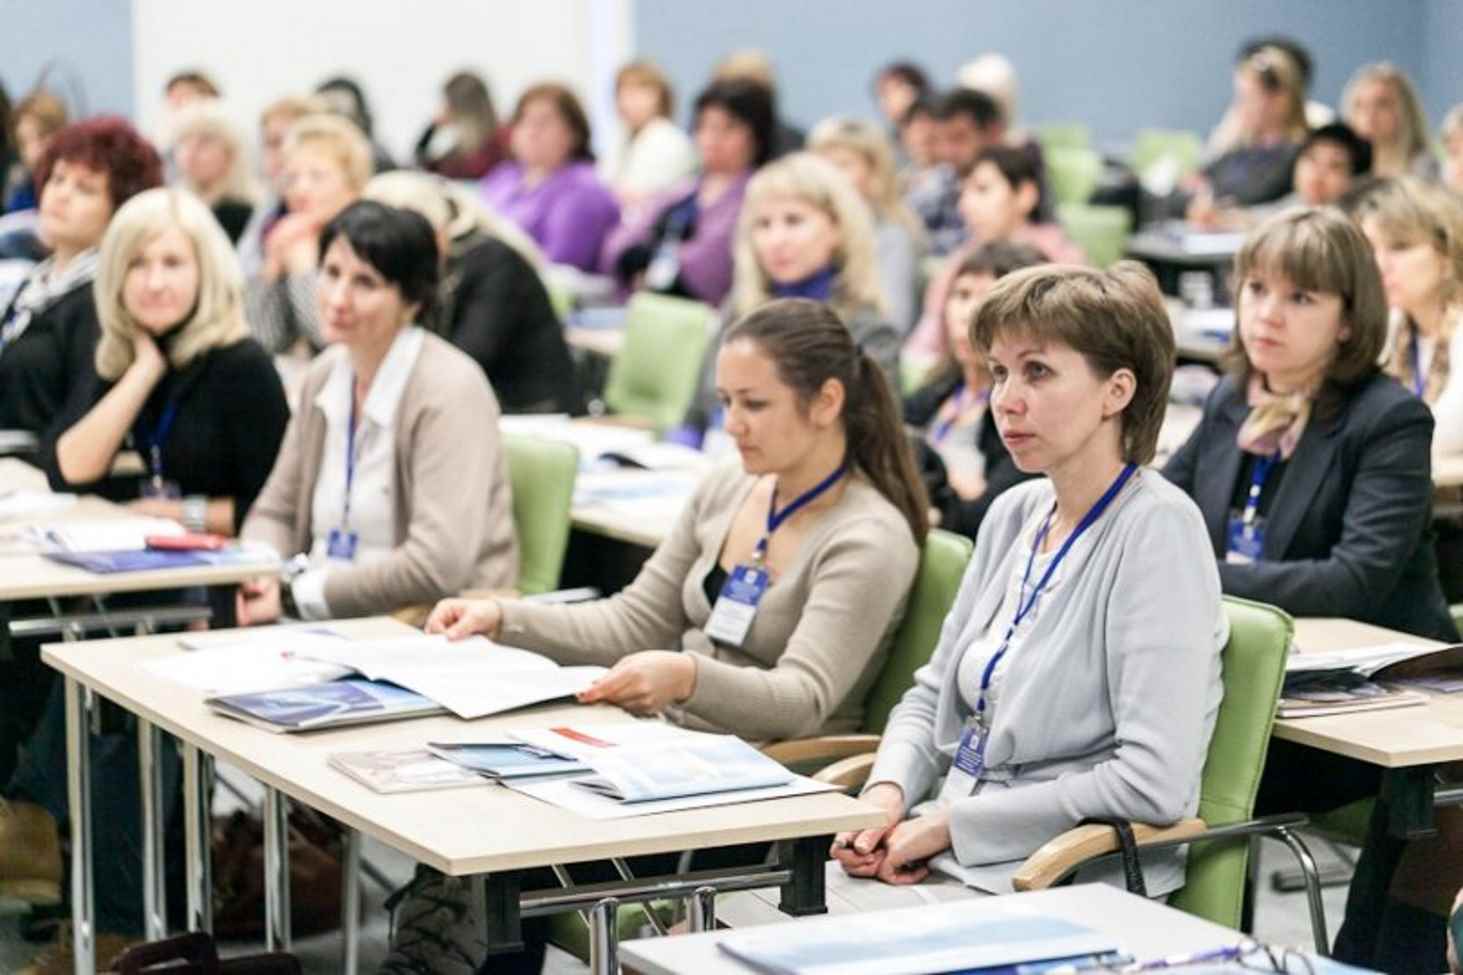 po-11-dekabrya-pedagogi-smogut-zapisatsya-na-3-kursa-za-990-rublej